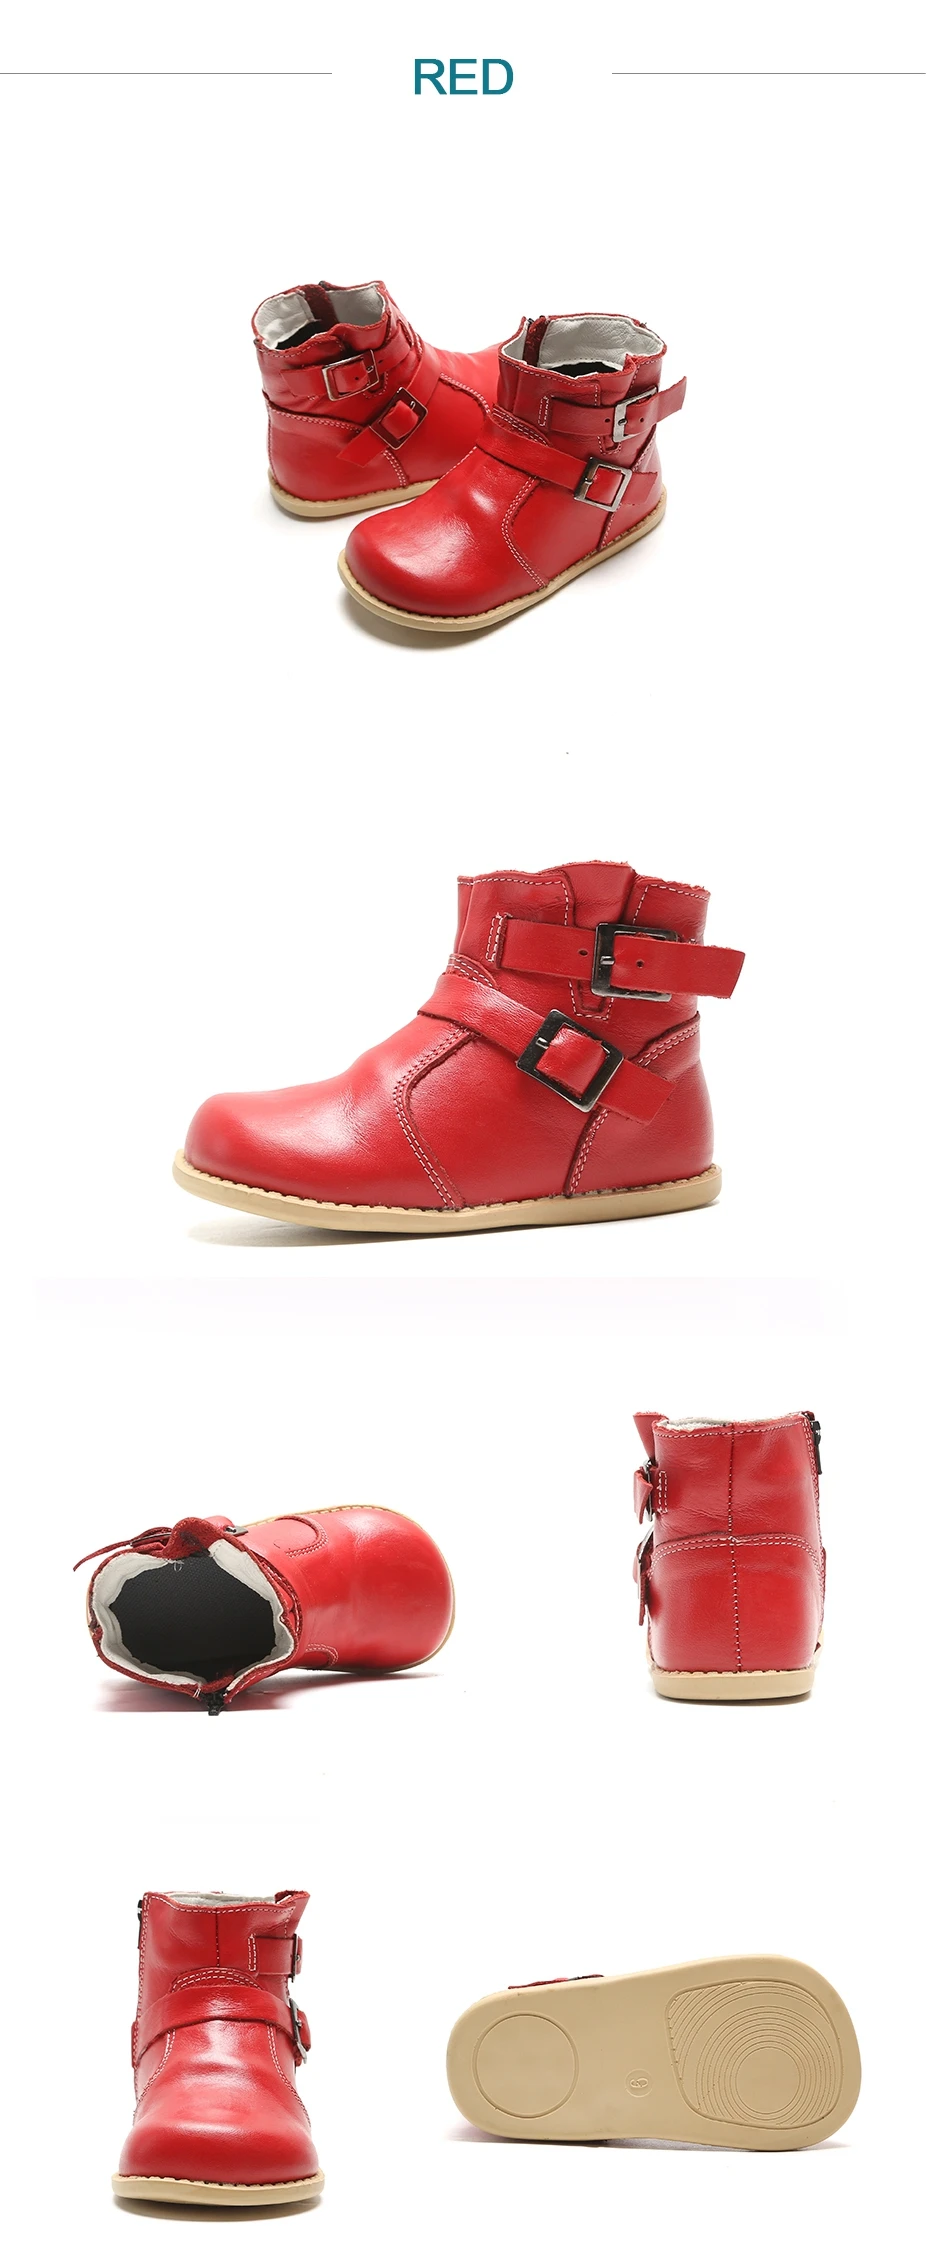 COPODENIEVE/детские ботинки; зимние сапоги для девочек и мальчиков; ботинки из натуральной кожи; обувь для школьниц